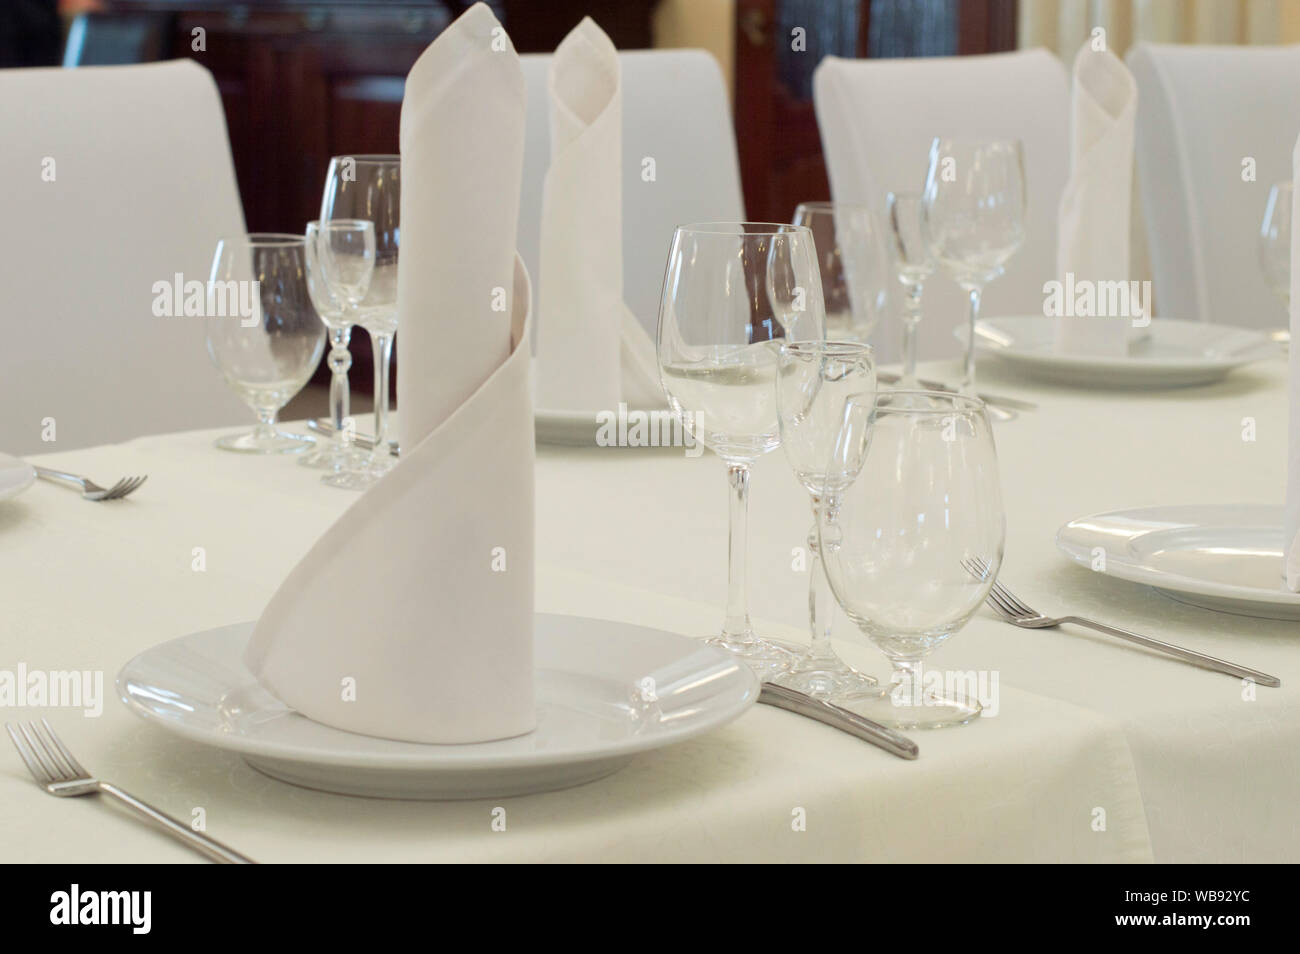 Une table avec des verres dans un restaurant. Verres en verre et des ustensiles. Banque D'Images